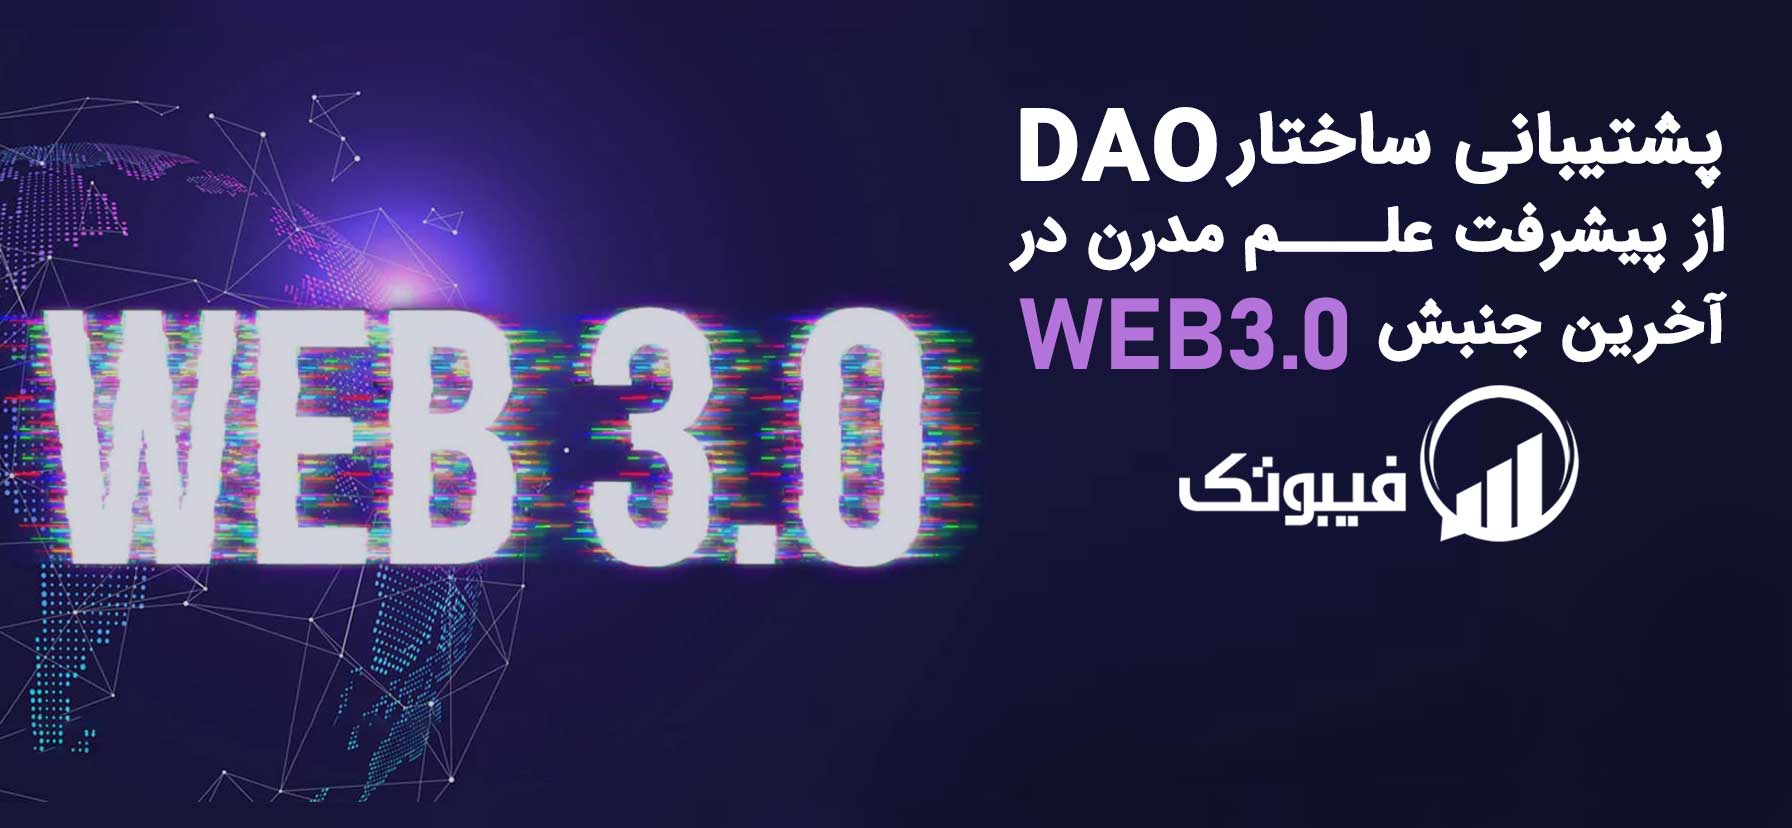 , پشتیبانی ساختار DAO از پیشرفت علم مدرن در آخرین جنبش Web3